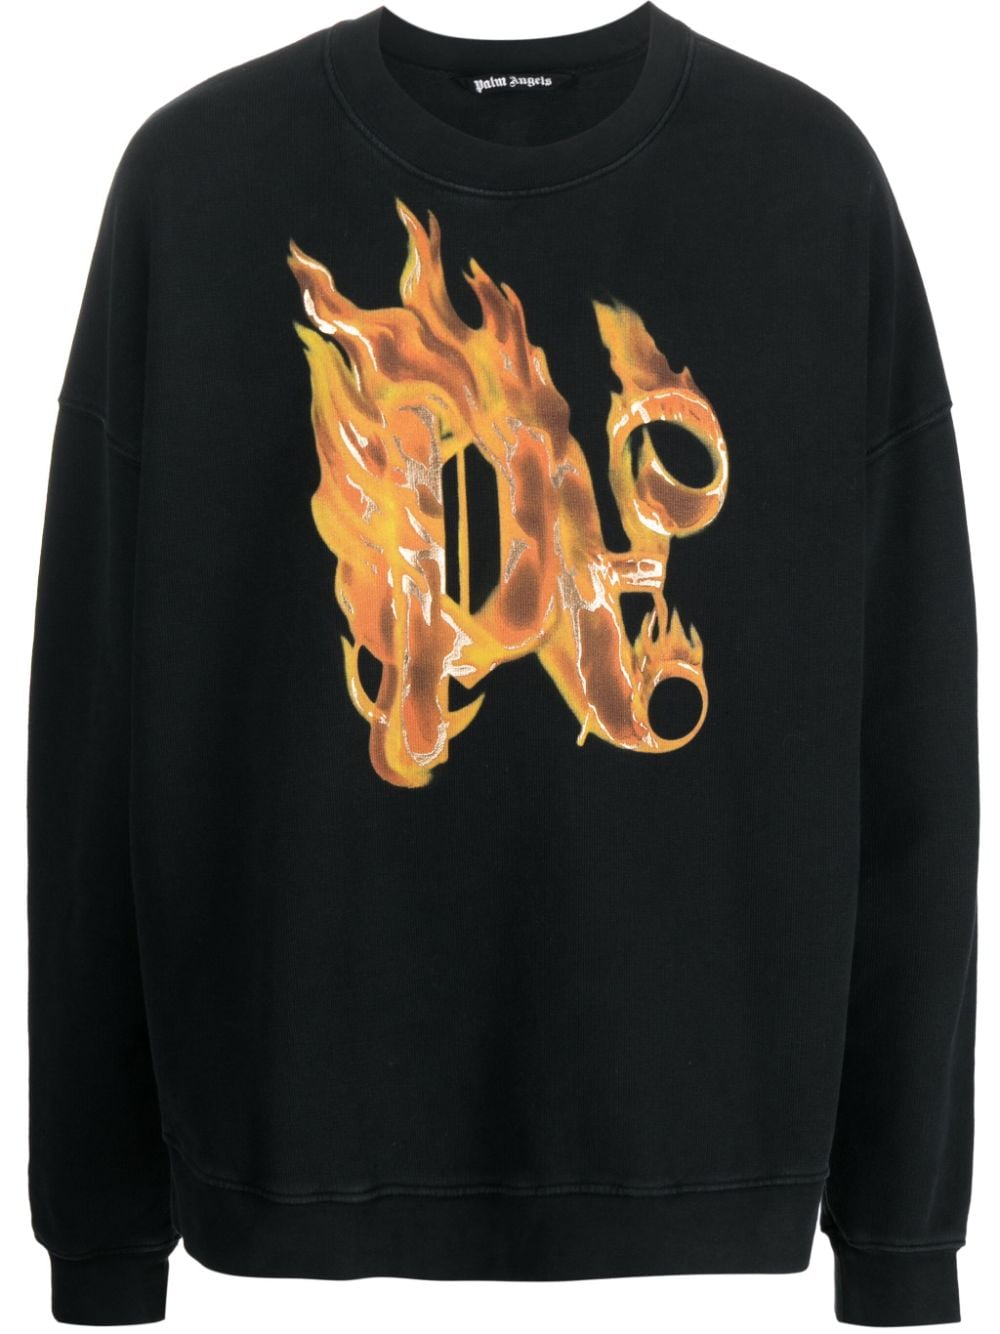 Burning motif sweatshirt<BR/><BR/><BR/>